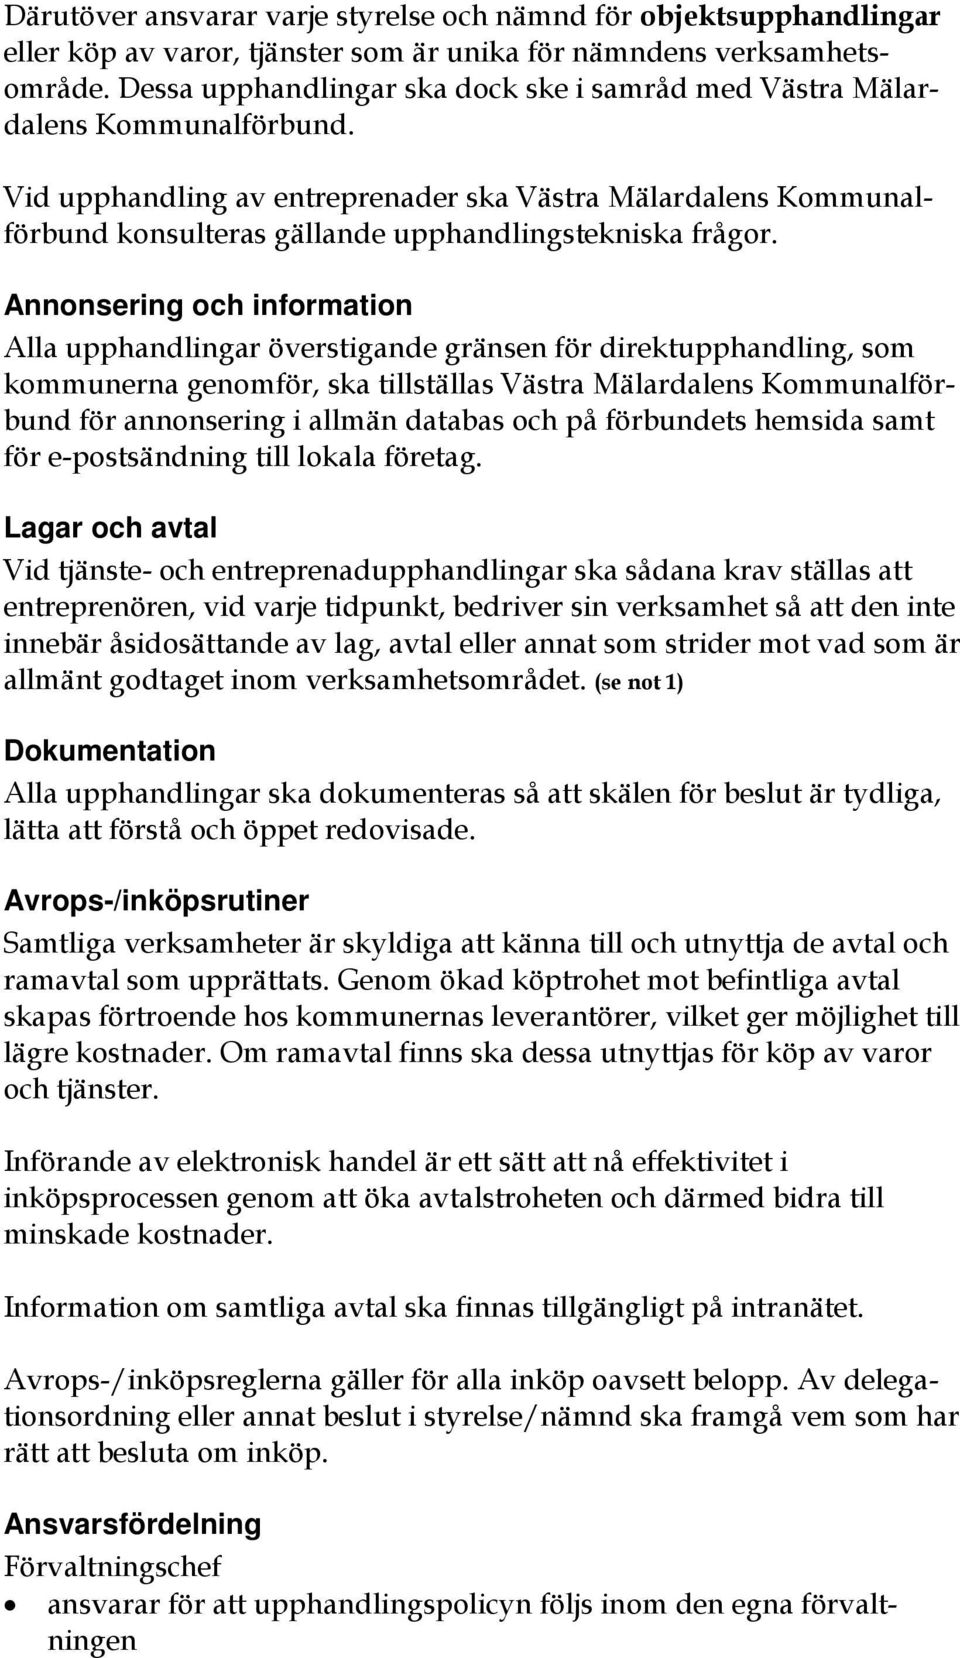 Vid upphandling av entreprenader ska Västra Mälardalens Kommunalförbund konsulteras gällande upphandlingstekniska frågor.